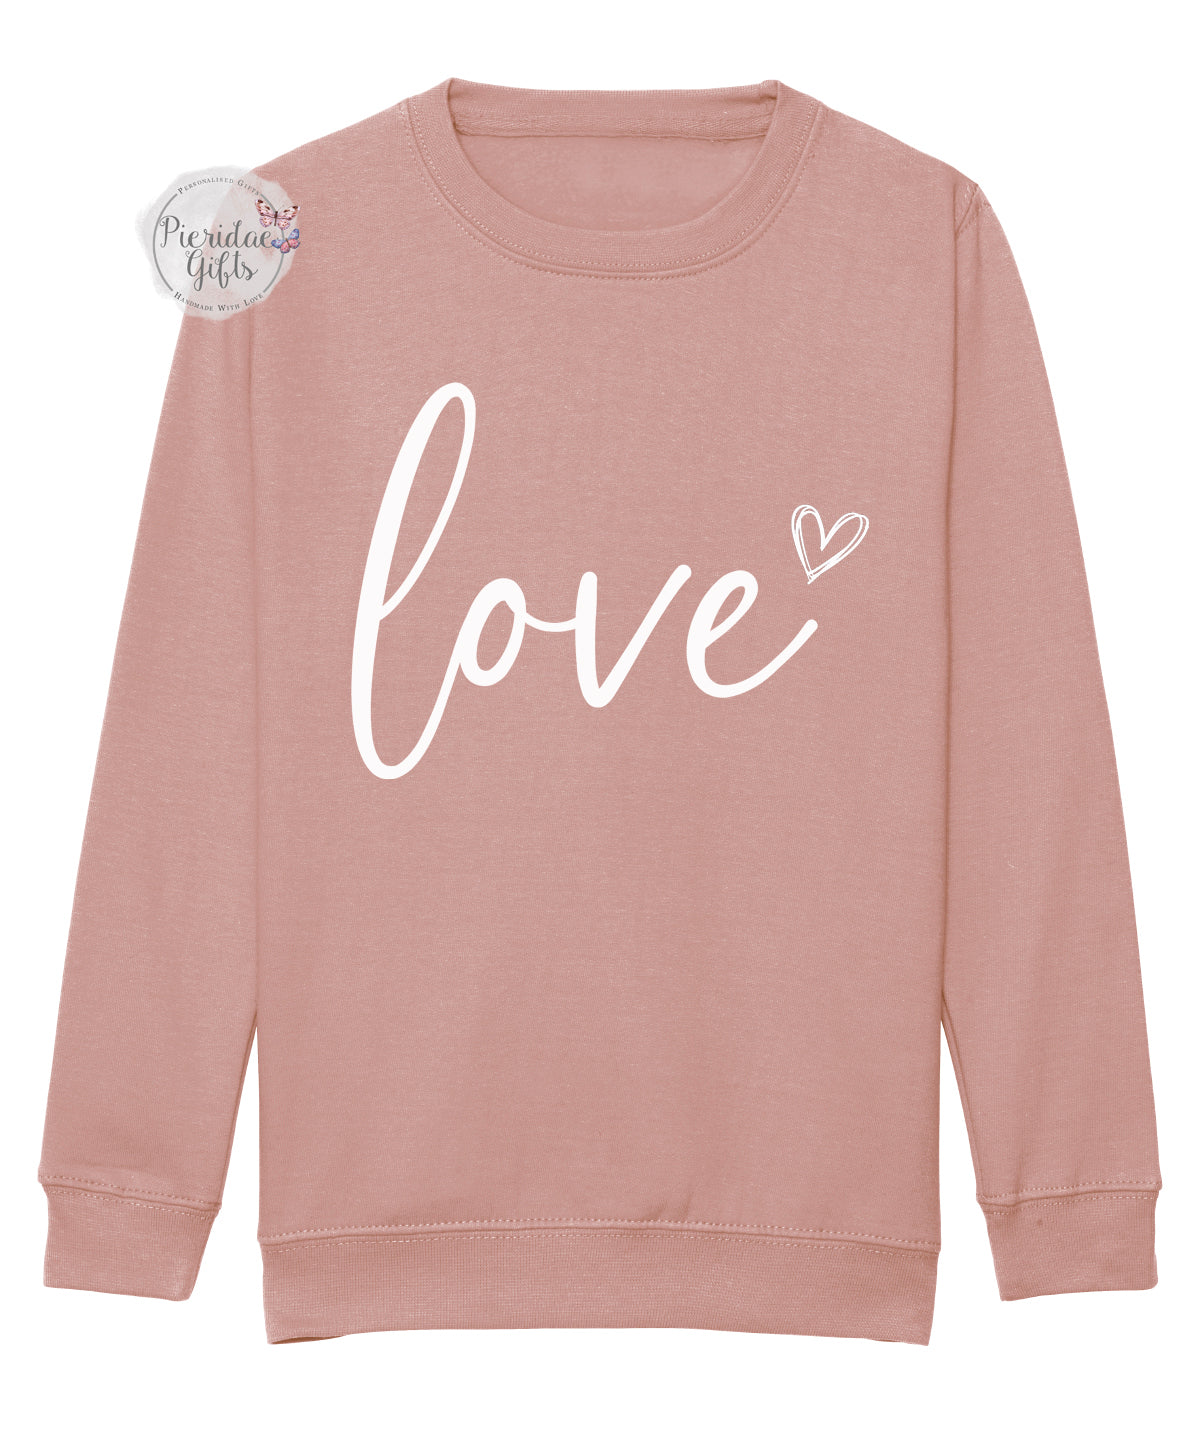 Love with Heart Children's Sweatshirt